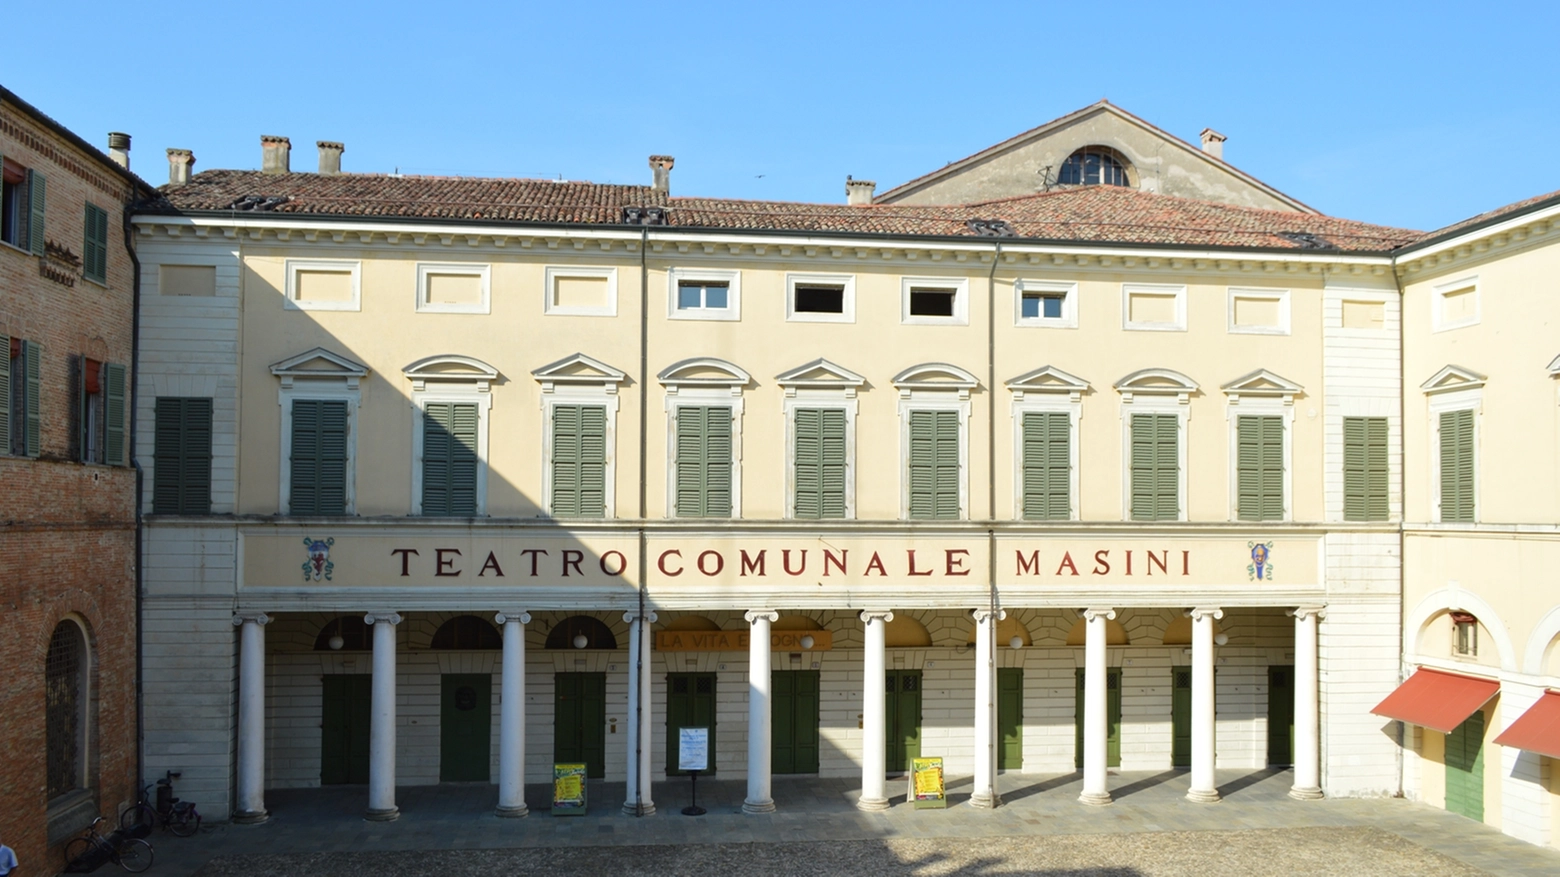 Alcuni scorci interi ed esterni del teatro comunale di faenza, Angelo Masini